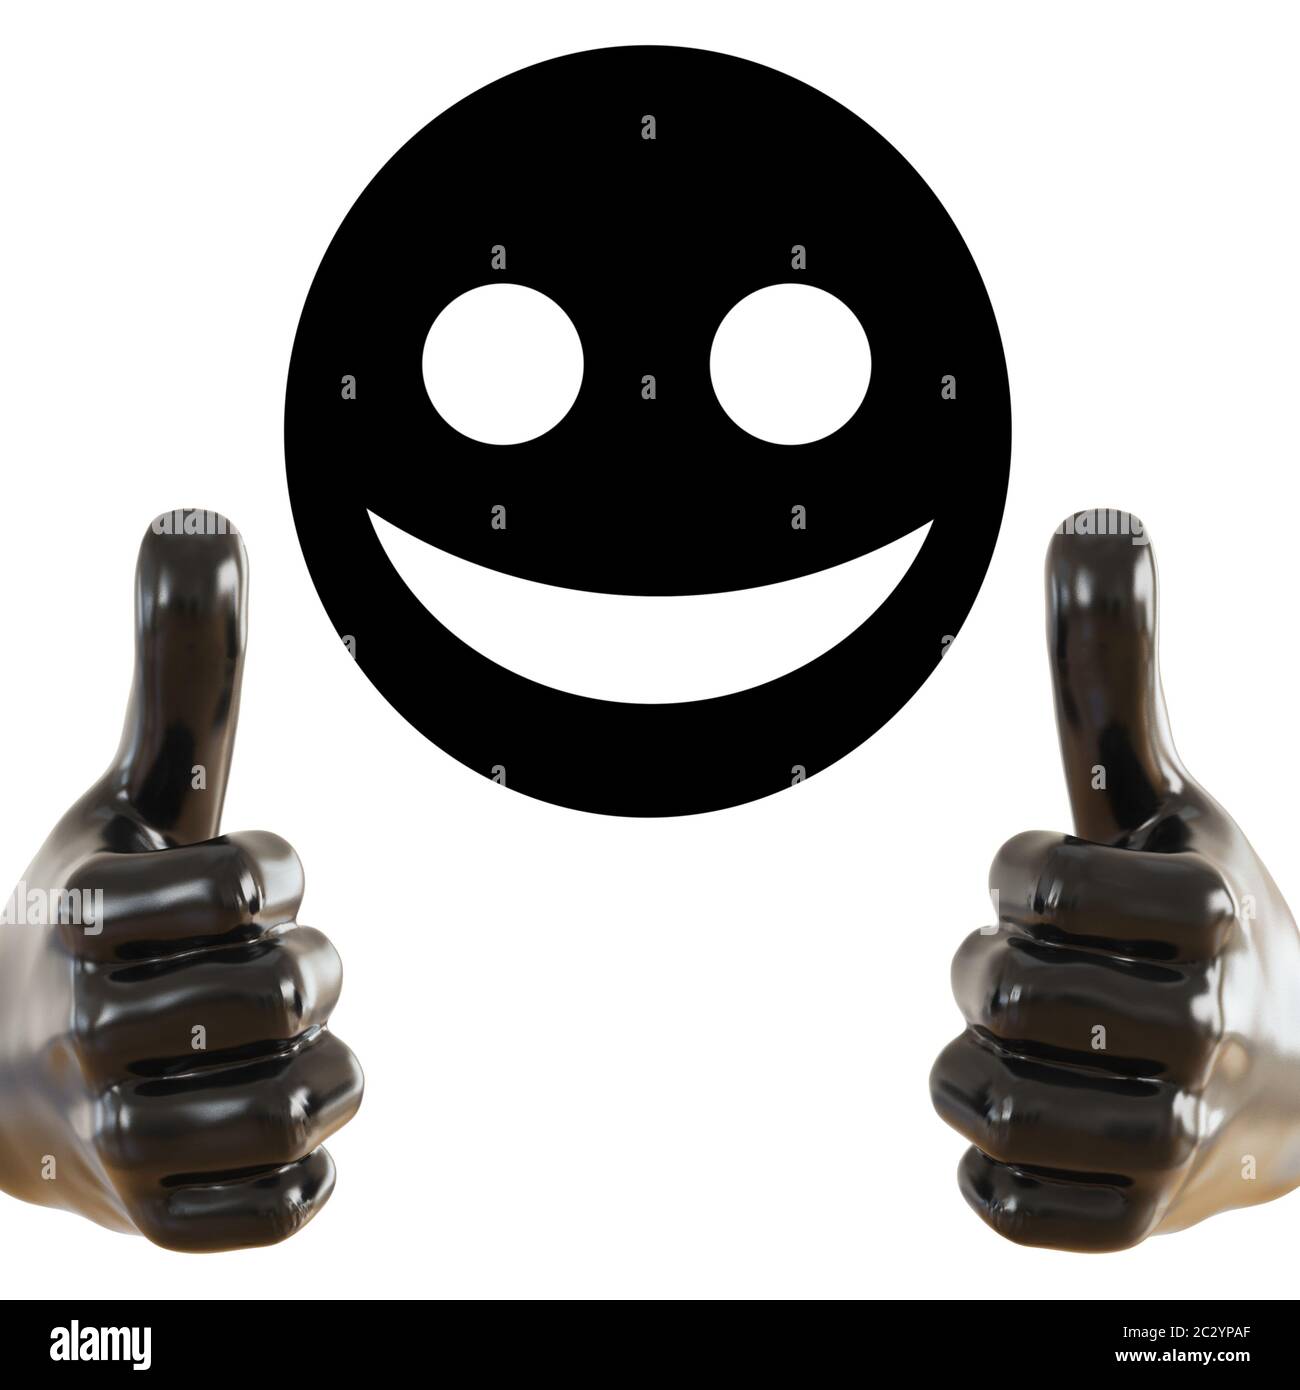 Figurine noire d'une main avec un pouce en saillie vers le haut et visage rond noir avec un sourire un arrière-plan isolé. rendu 3d Banque D'Images